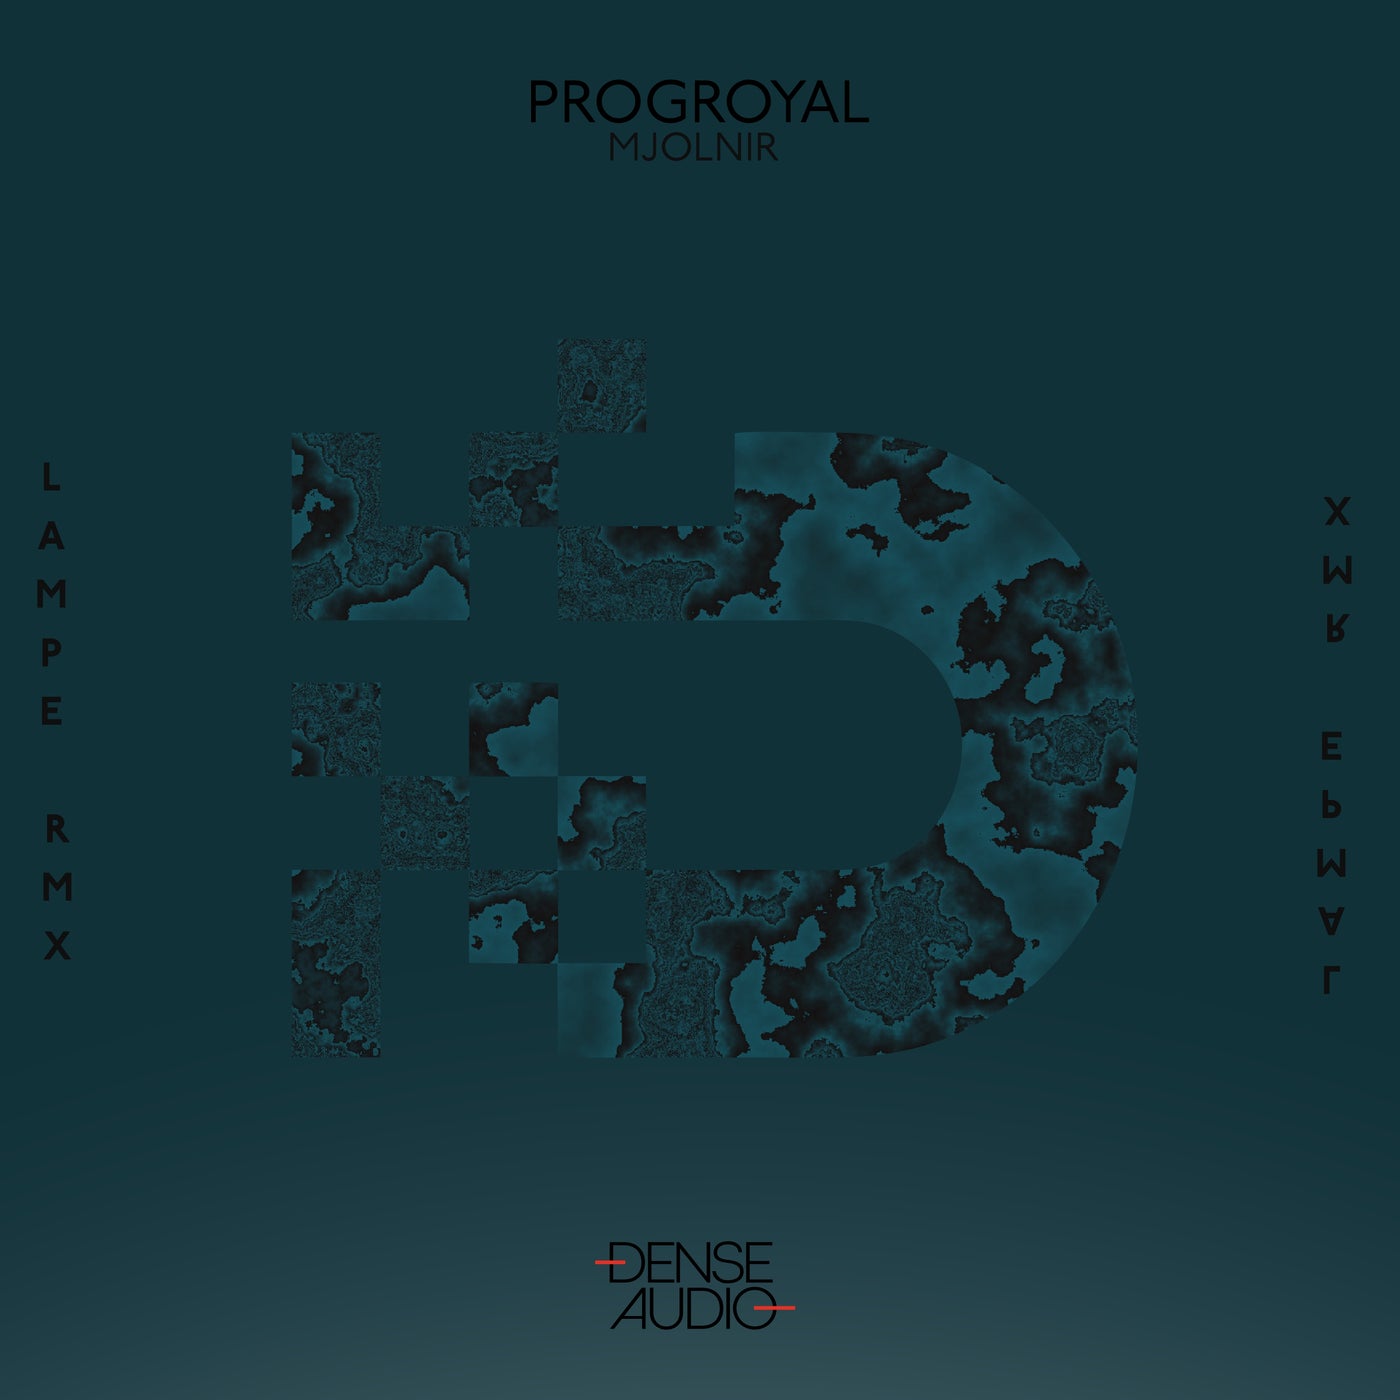 Progroyal - Mjolnir (Lampe Remix)